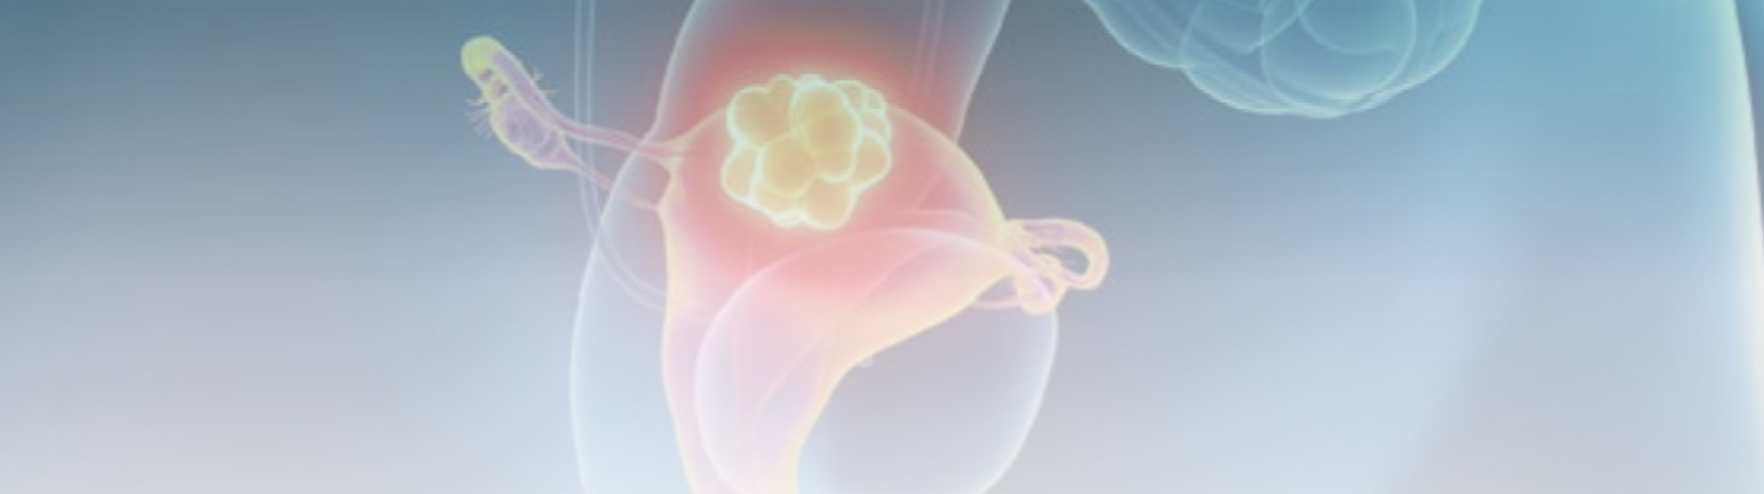 Rastreamento e vacinação como estratégias para prevenção do câncer de colo uterino